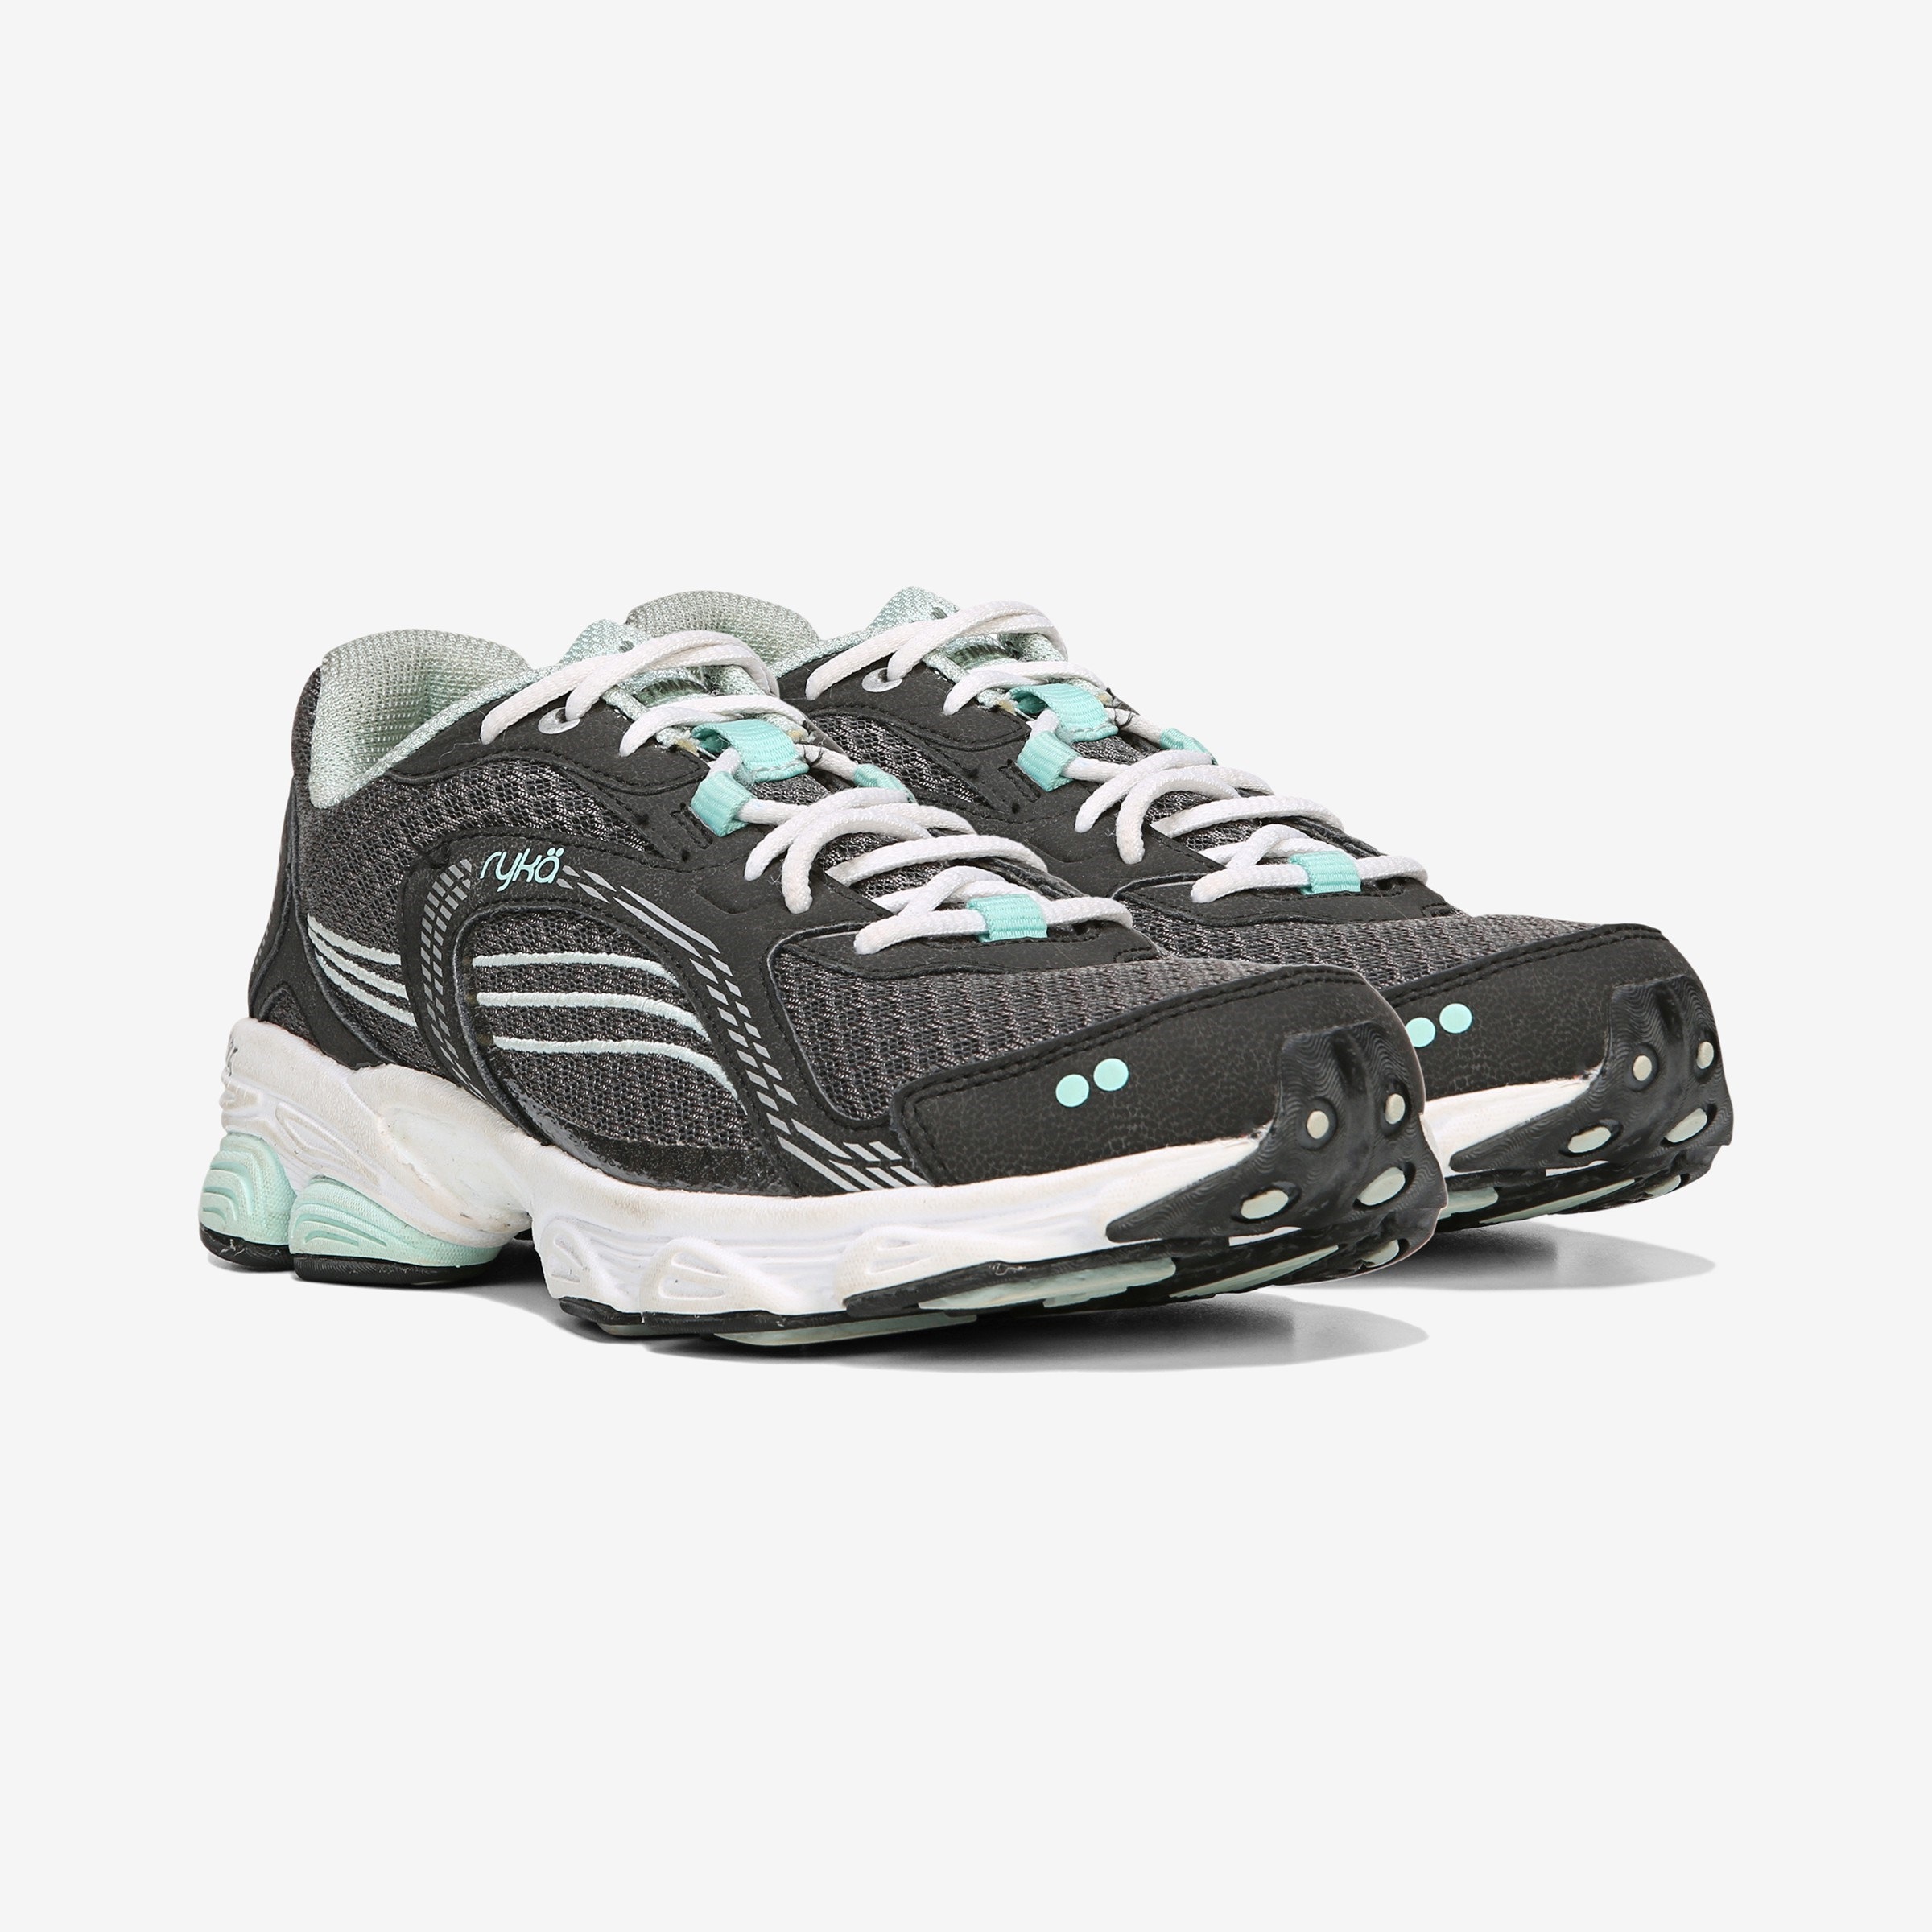 Ryka Unisex-Adult Ultimate Running Shoe